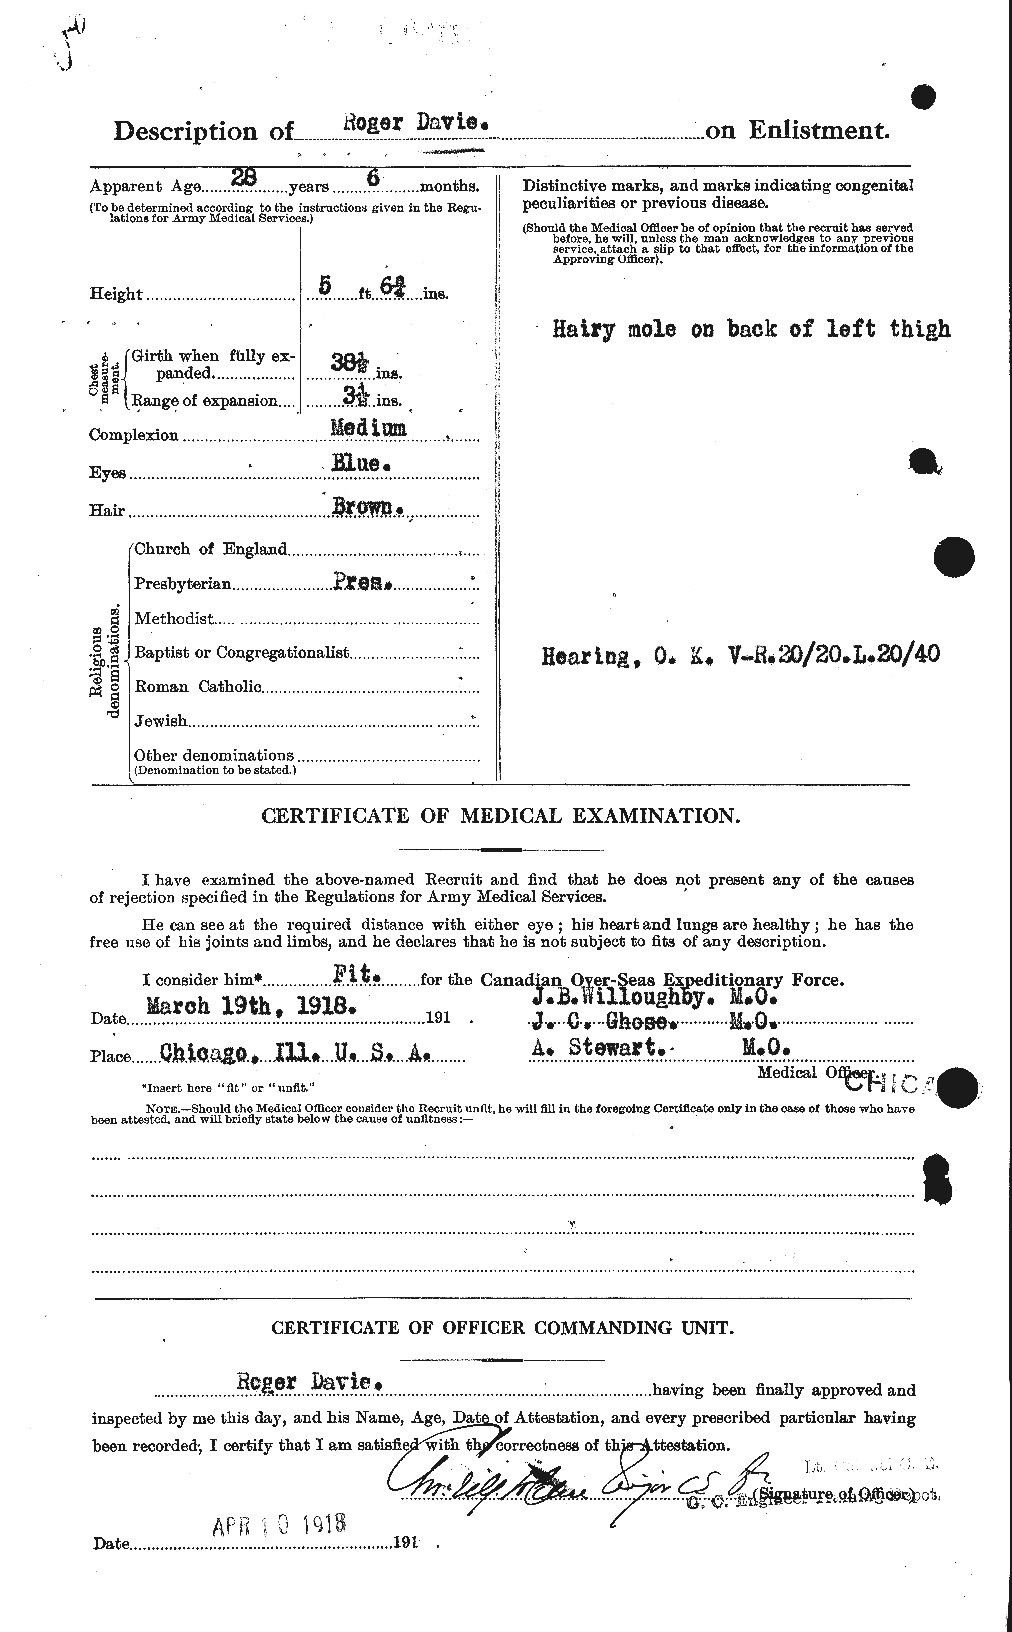 Dossiers du Personnel de la Première Guerre mondiale - CEC 278845b